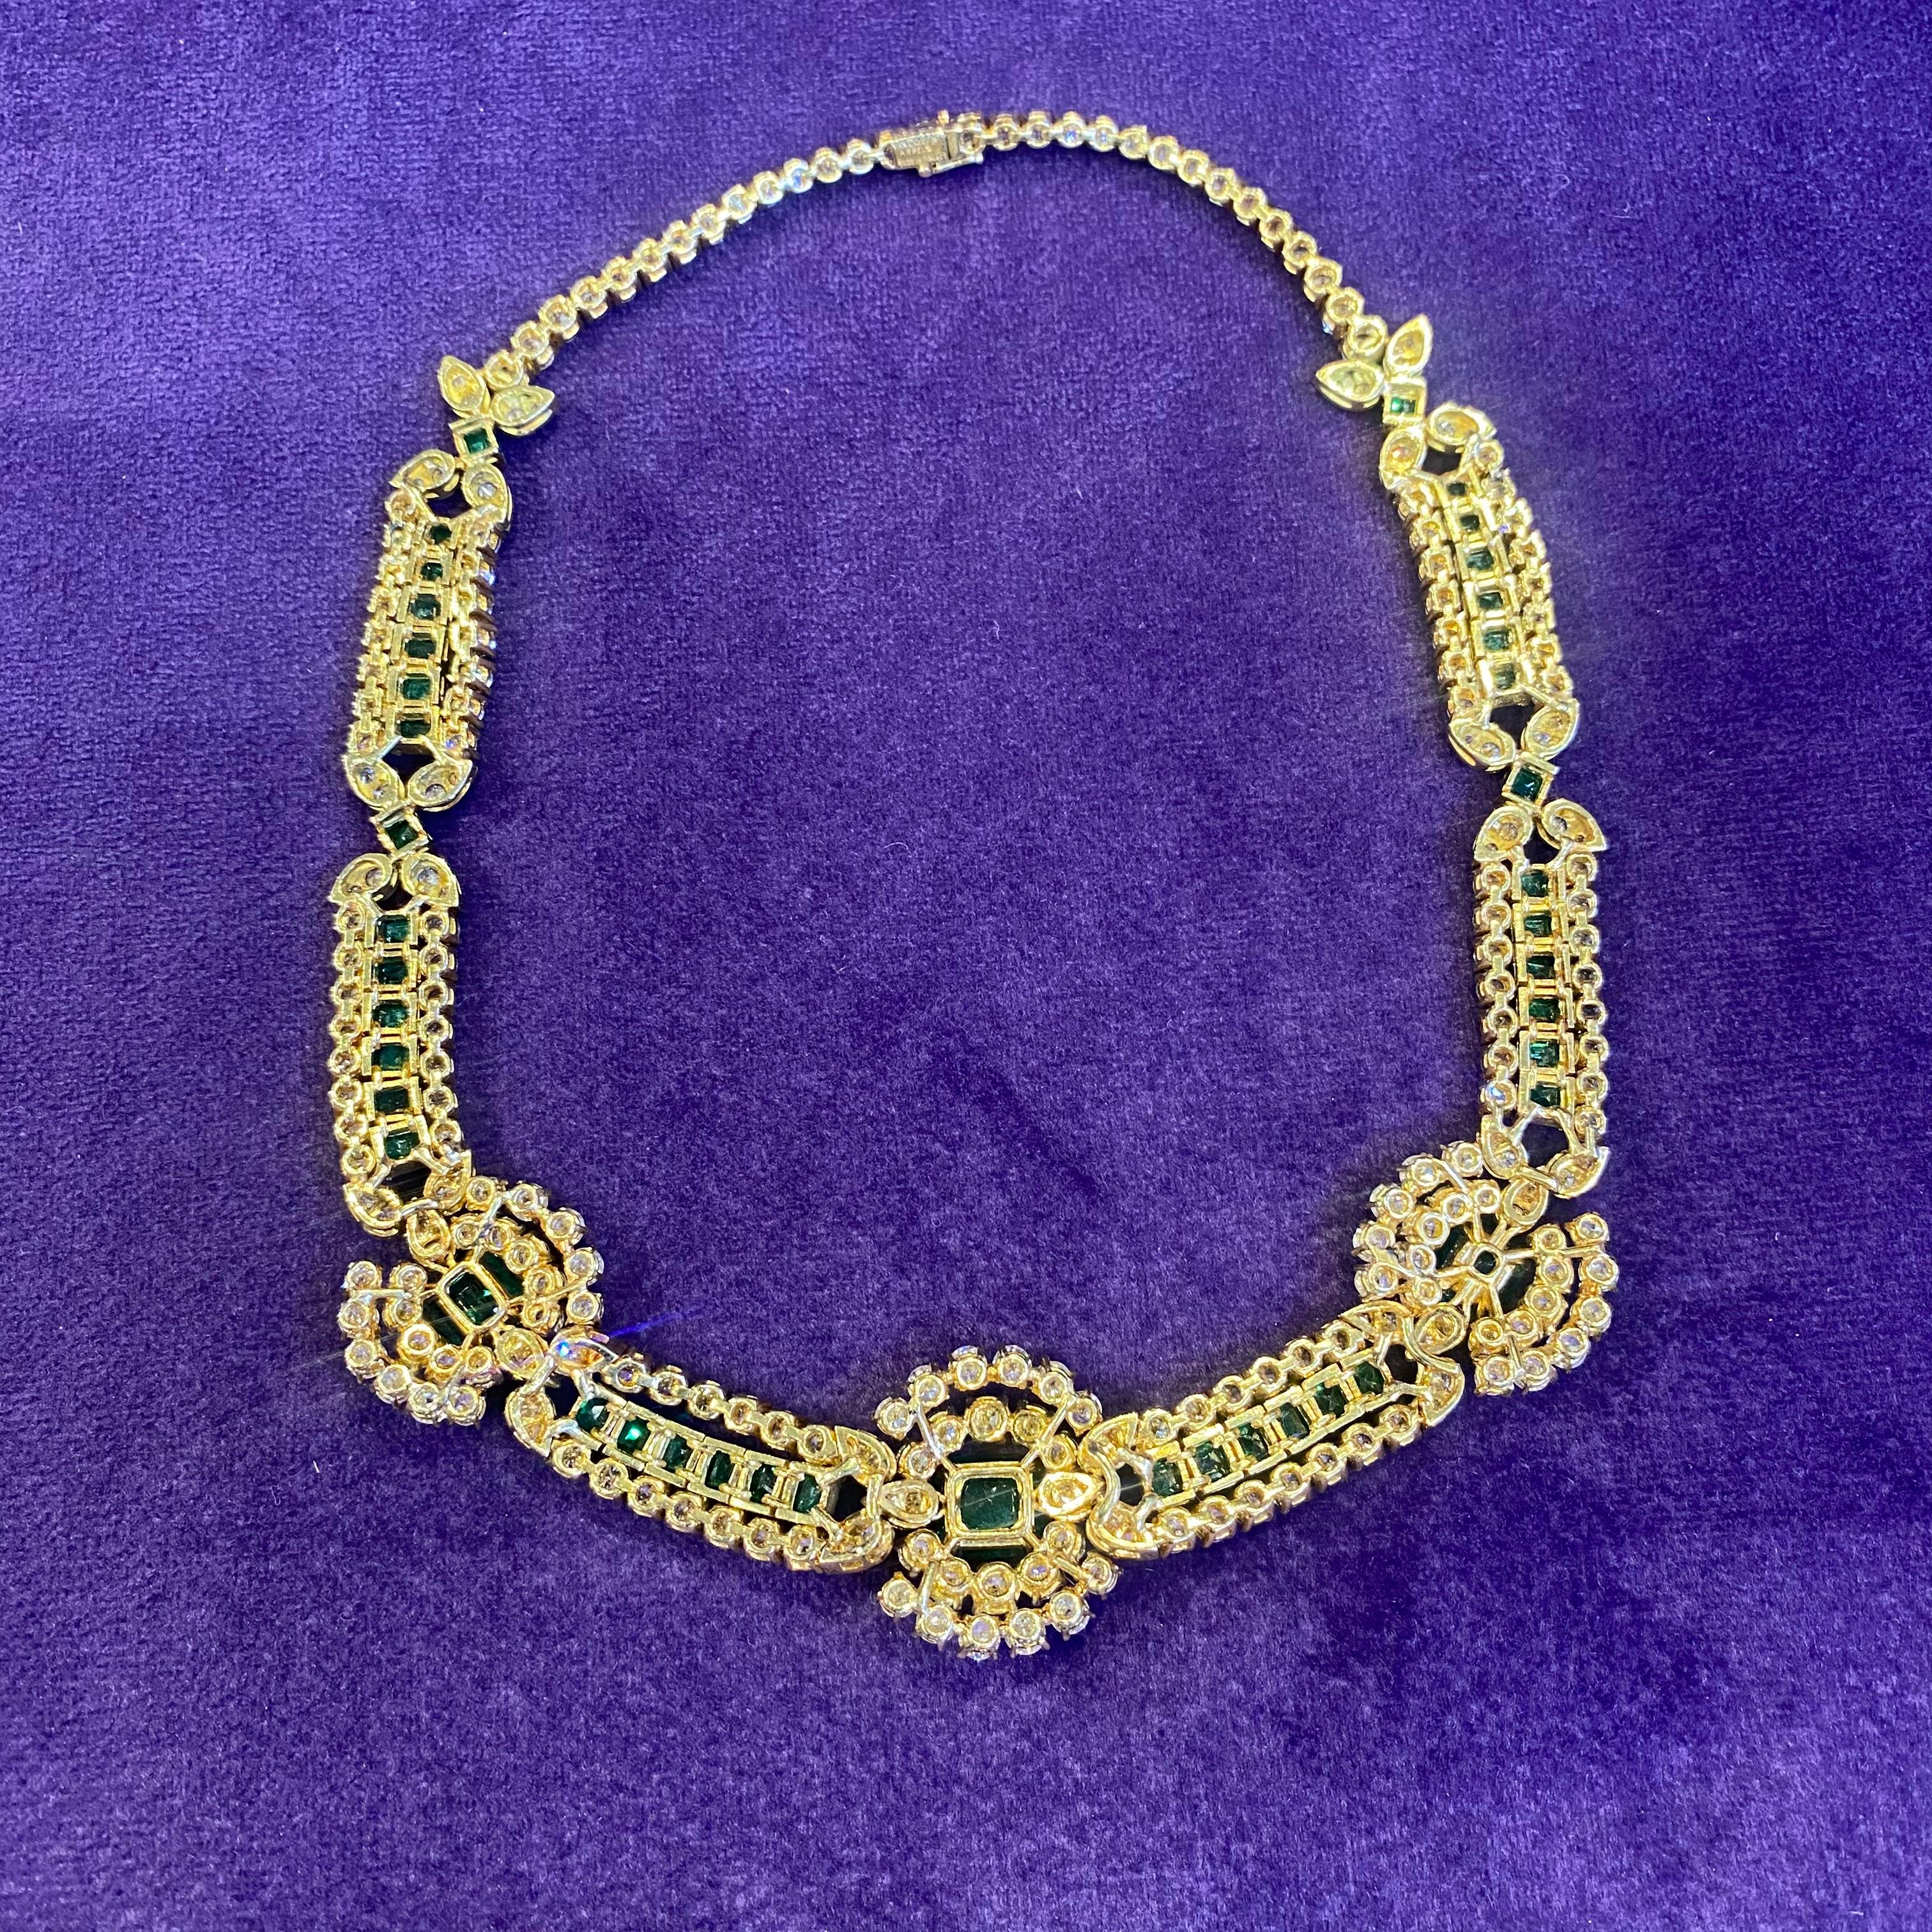 Van Cleef & Arpels Diamond & Emerald Necklace For Sale 6